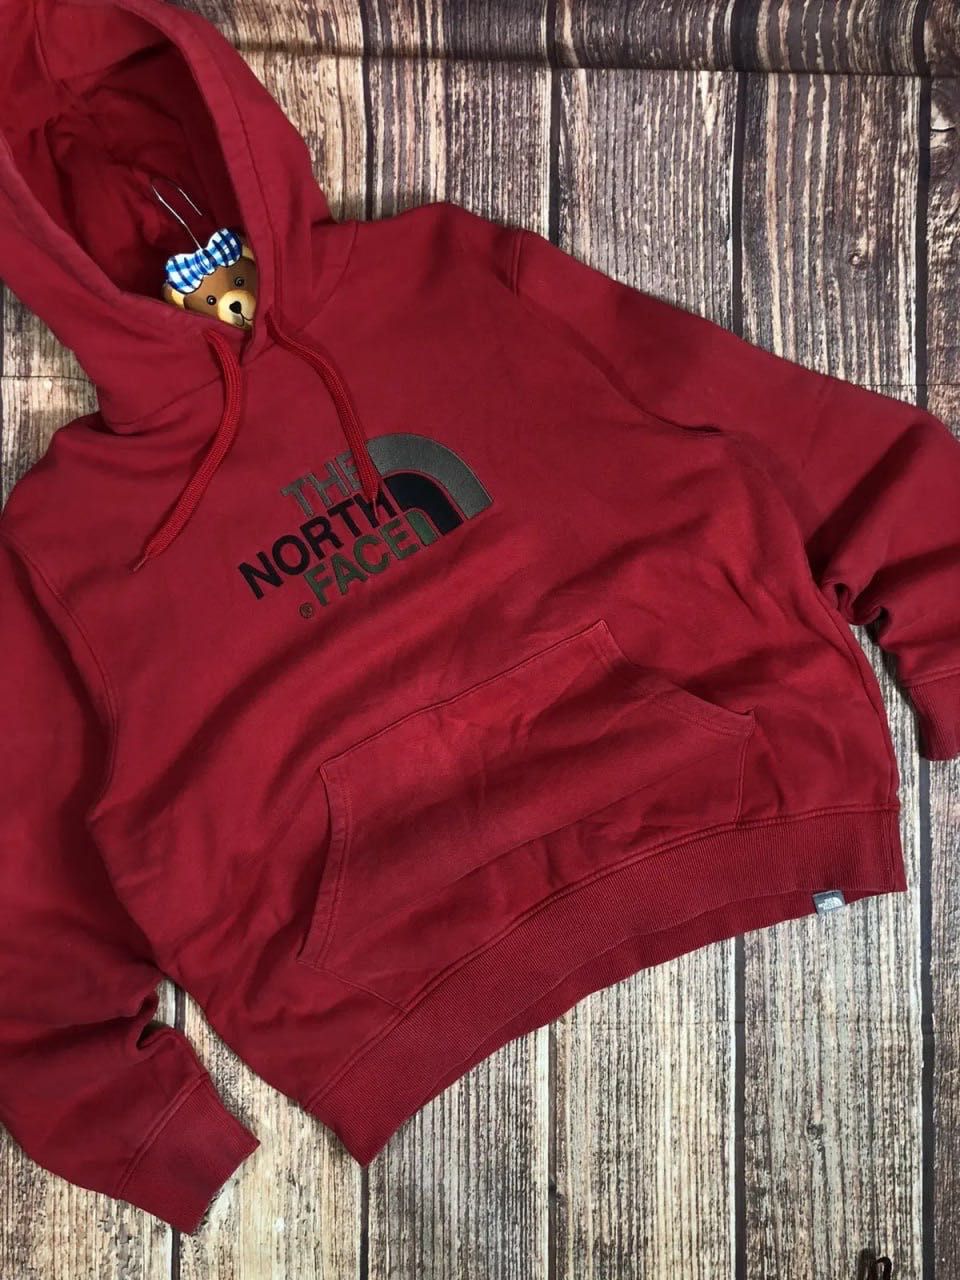 Худі(Кофта)Пайта(Світшот)від The North Face з великим логотипом